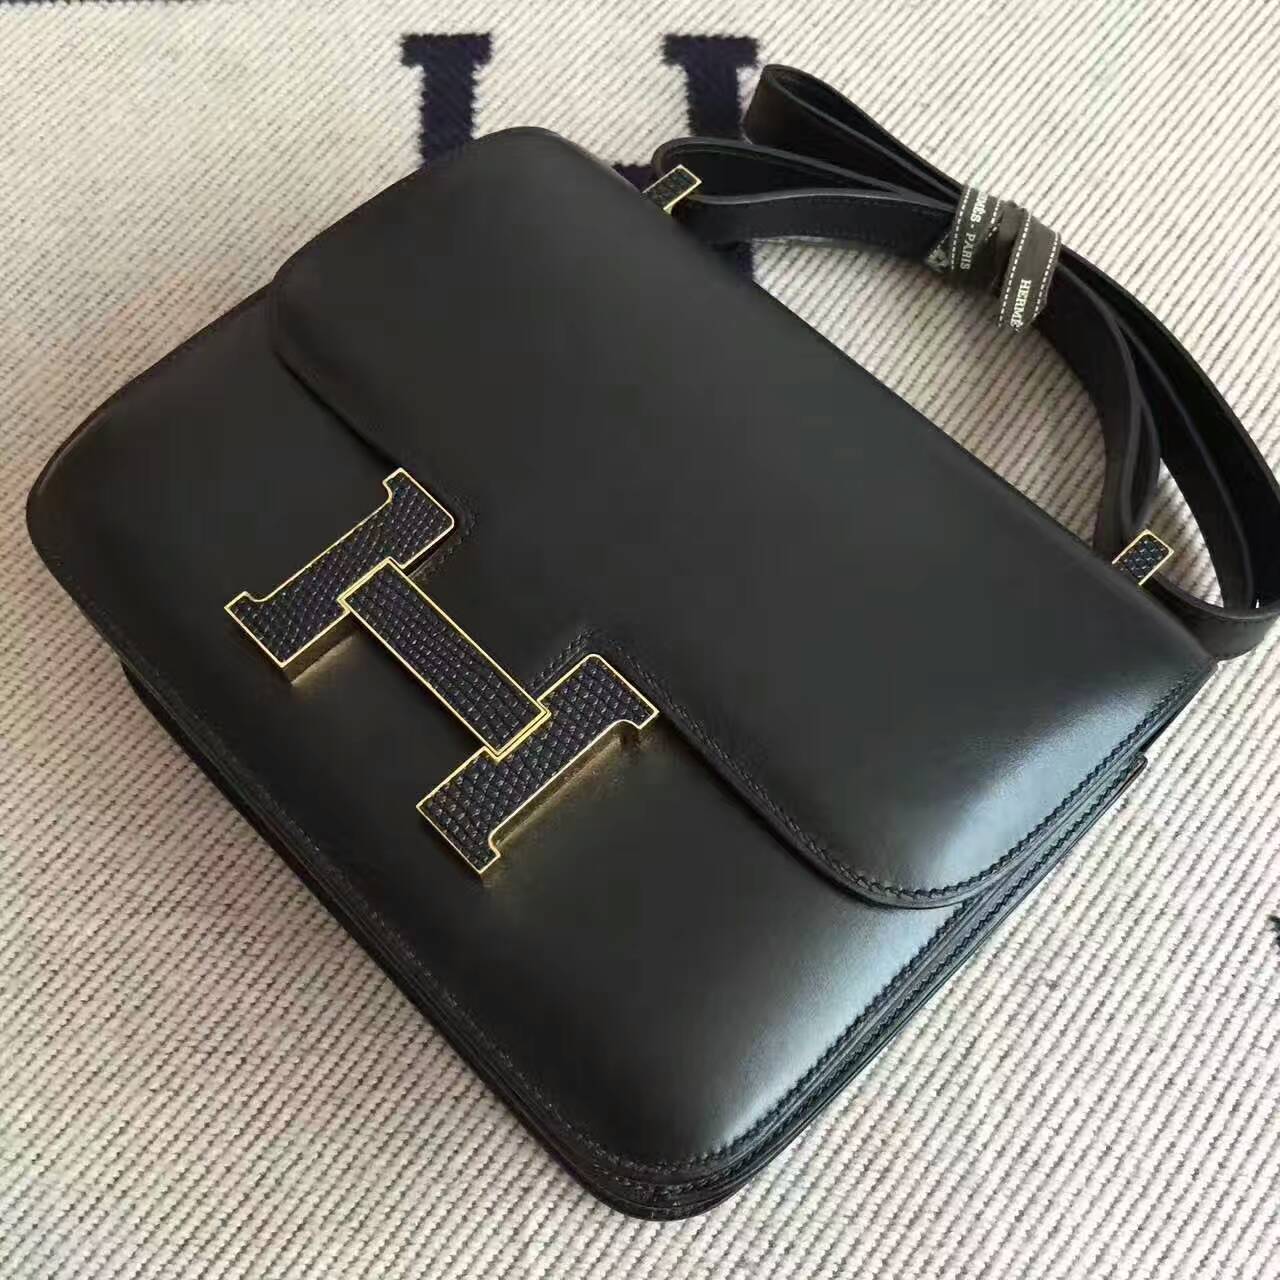 On Sale Hermes Box Calf Leather Black Constance Bag 24cm Shoulder Bag